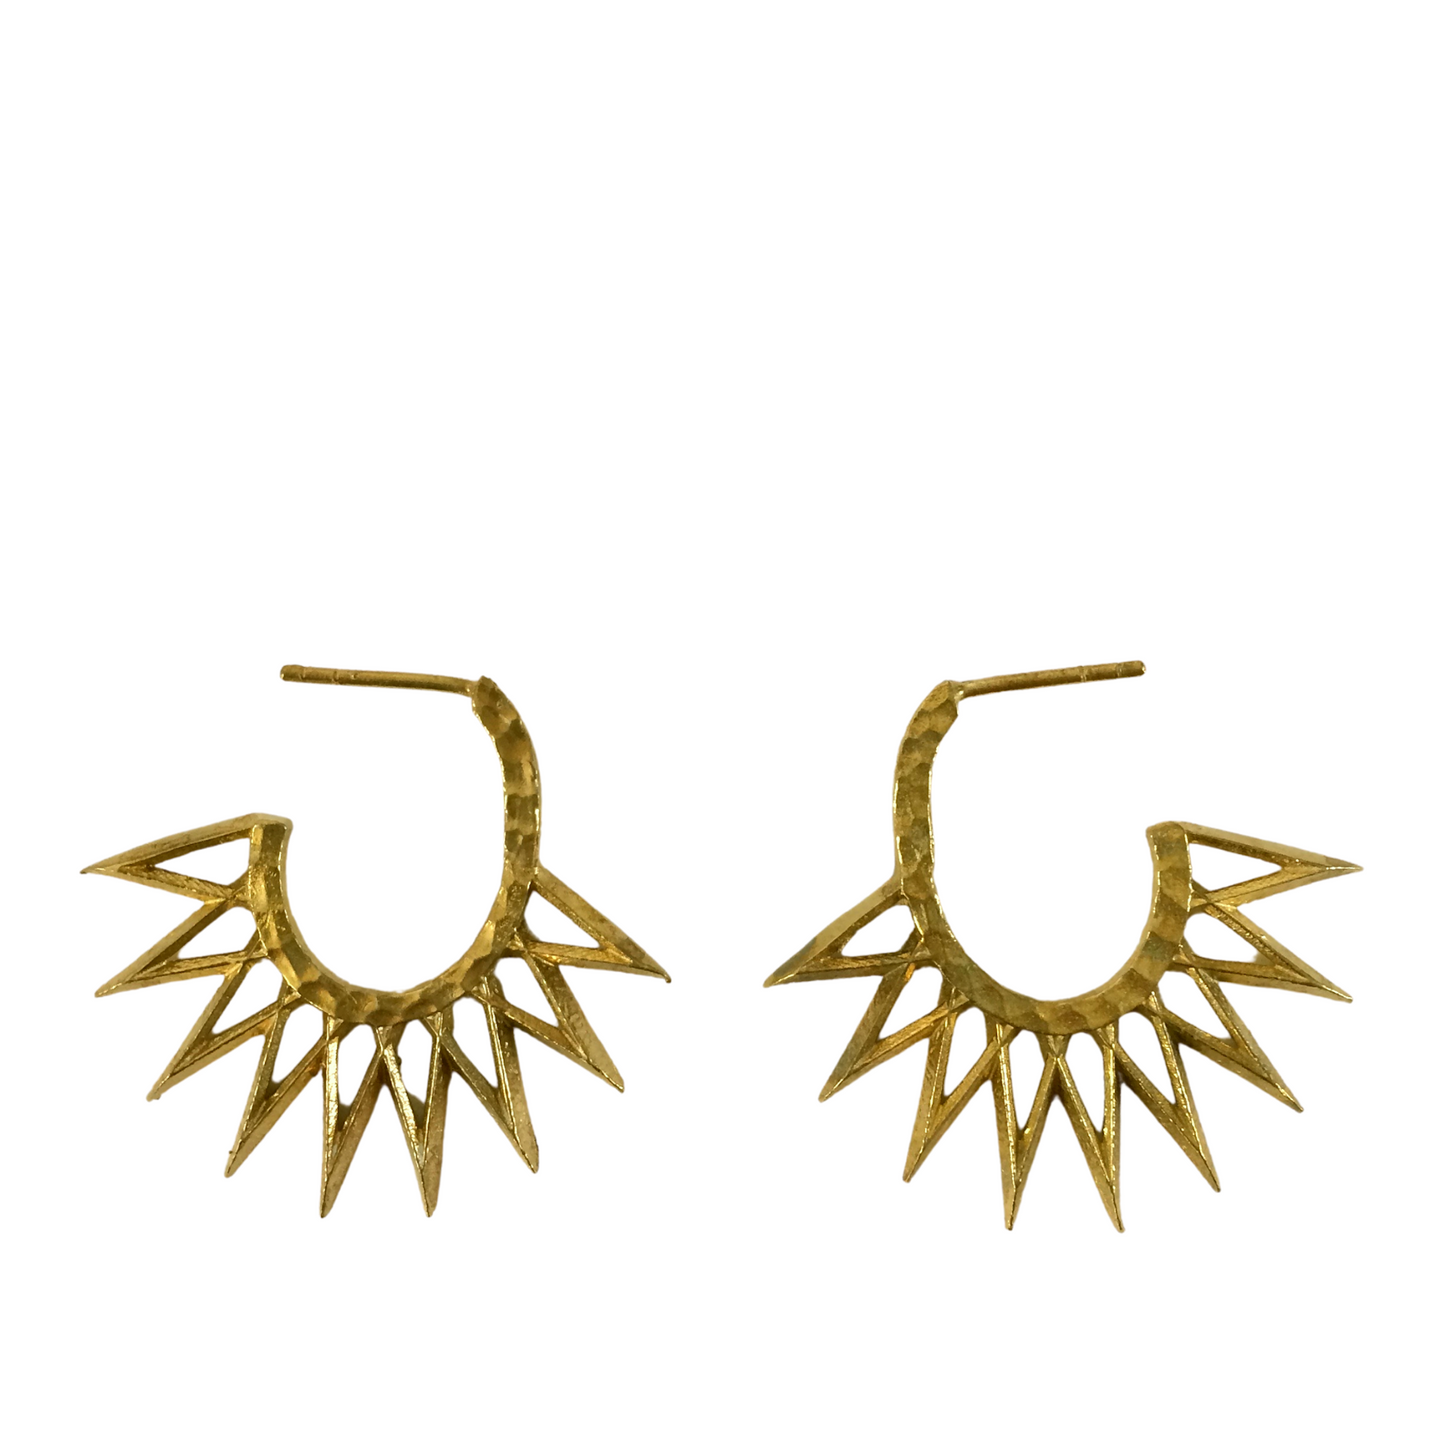 Irth Sunburst Brass Earrings